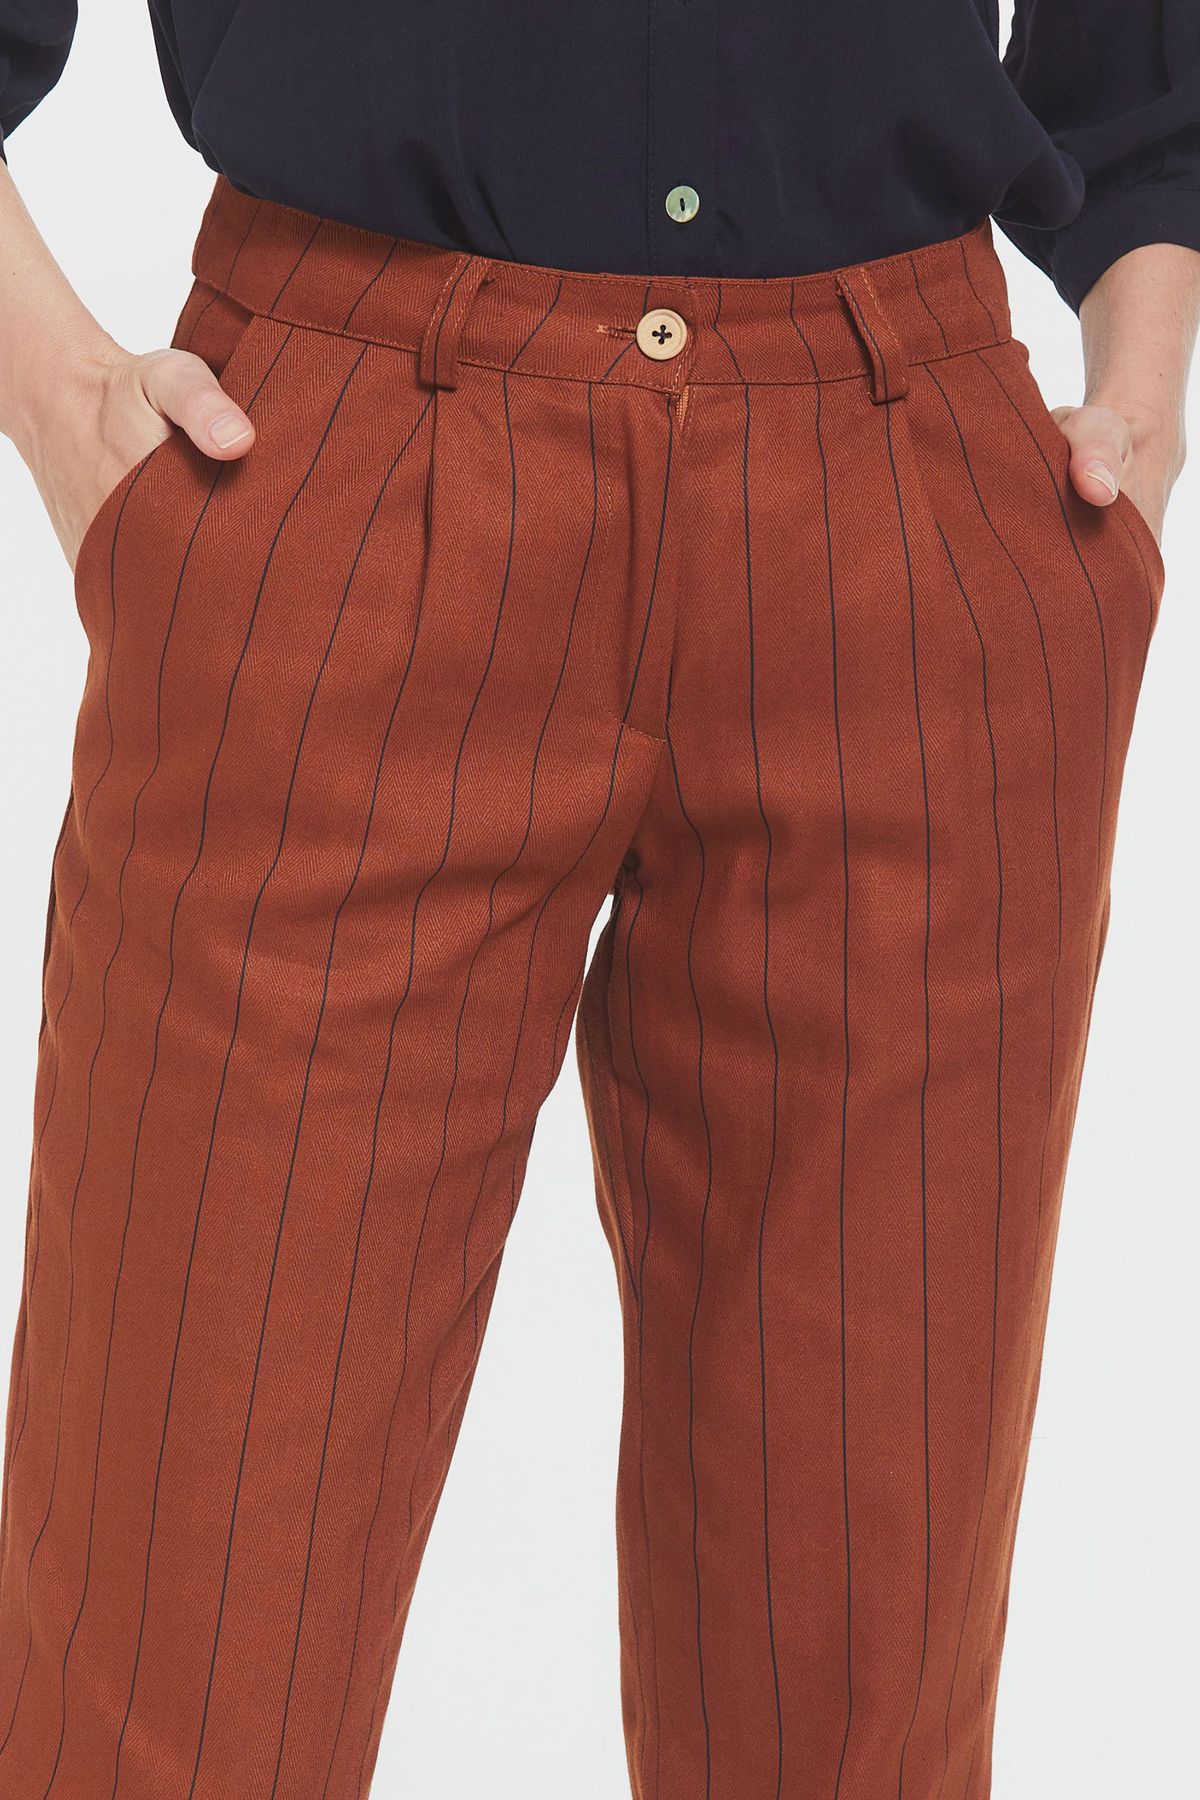 Women's Striped Cotton Pants Orange